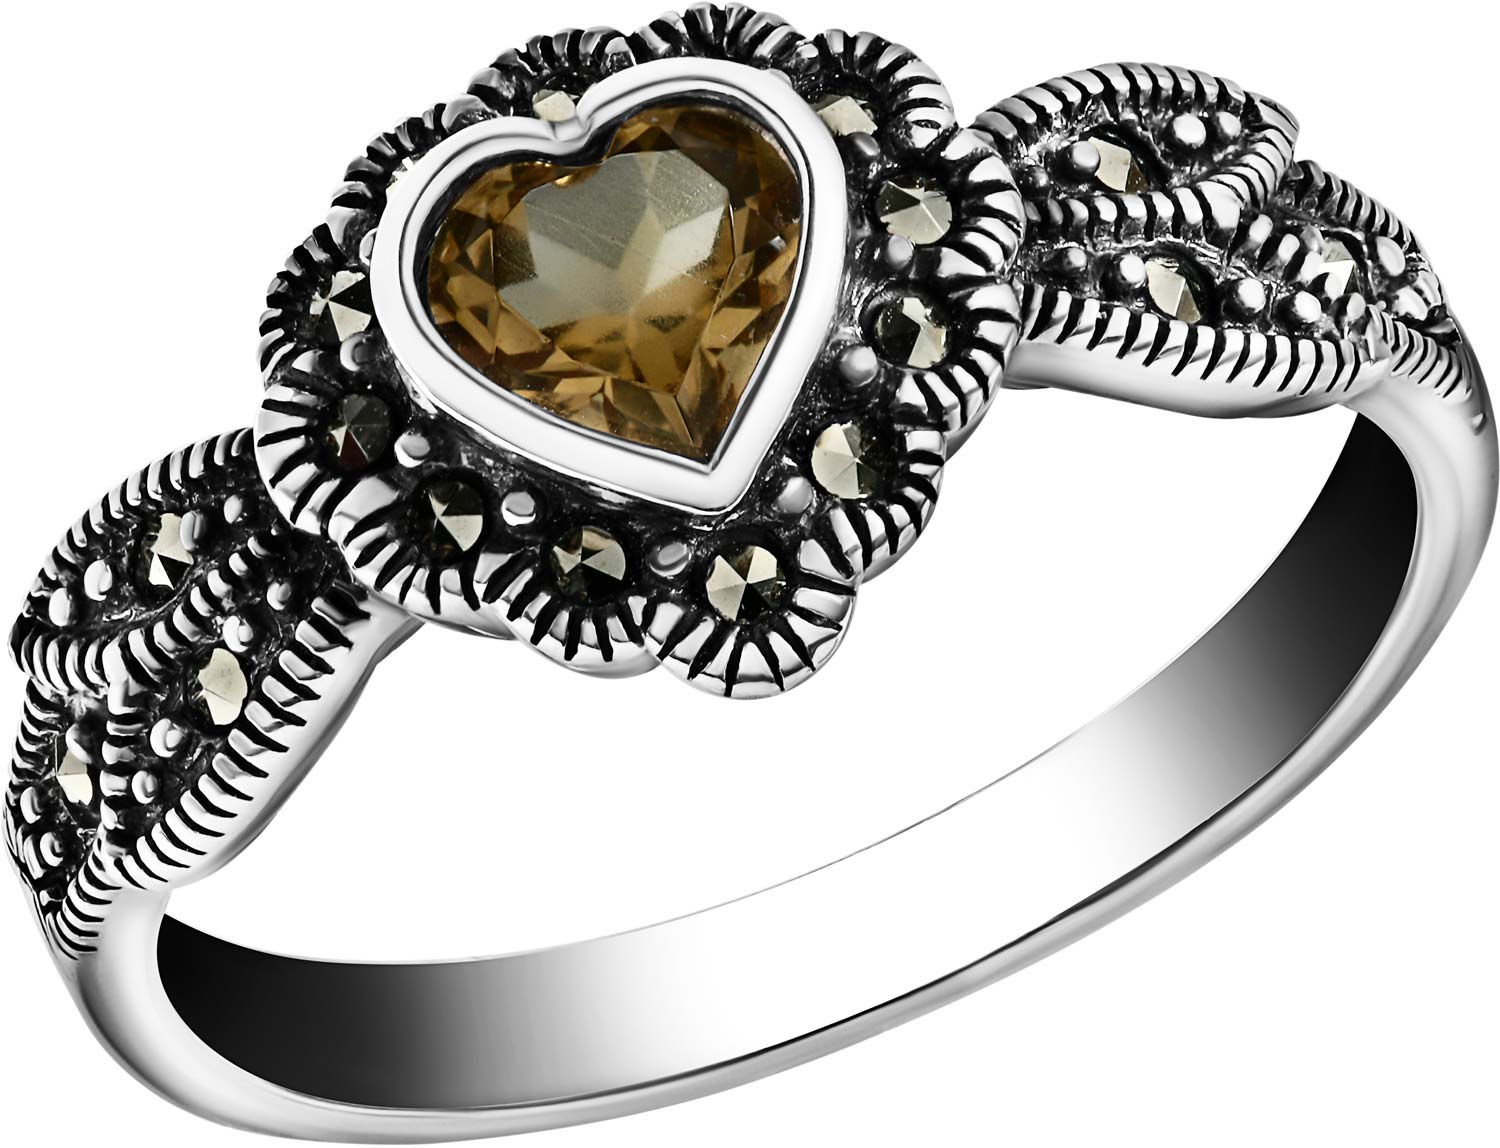 Серебряное кольцо Марказит HR0156-sultanit-mr с искусственным султанитом, марказитами Swarovski